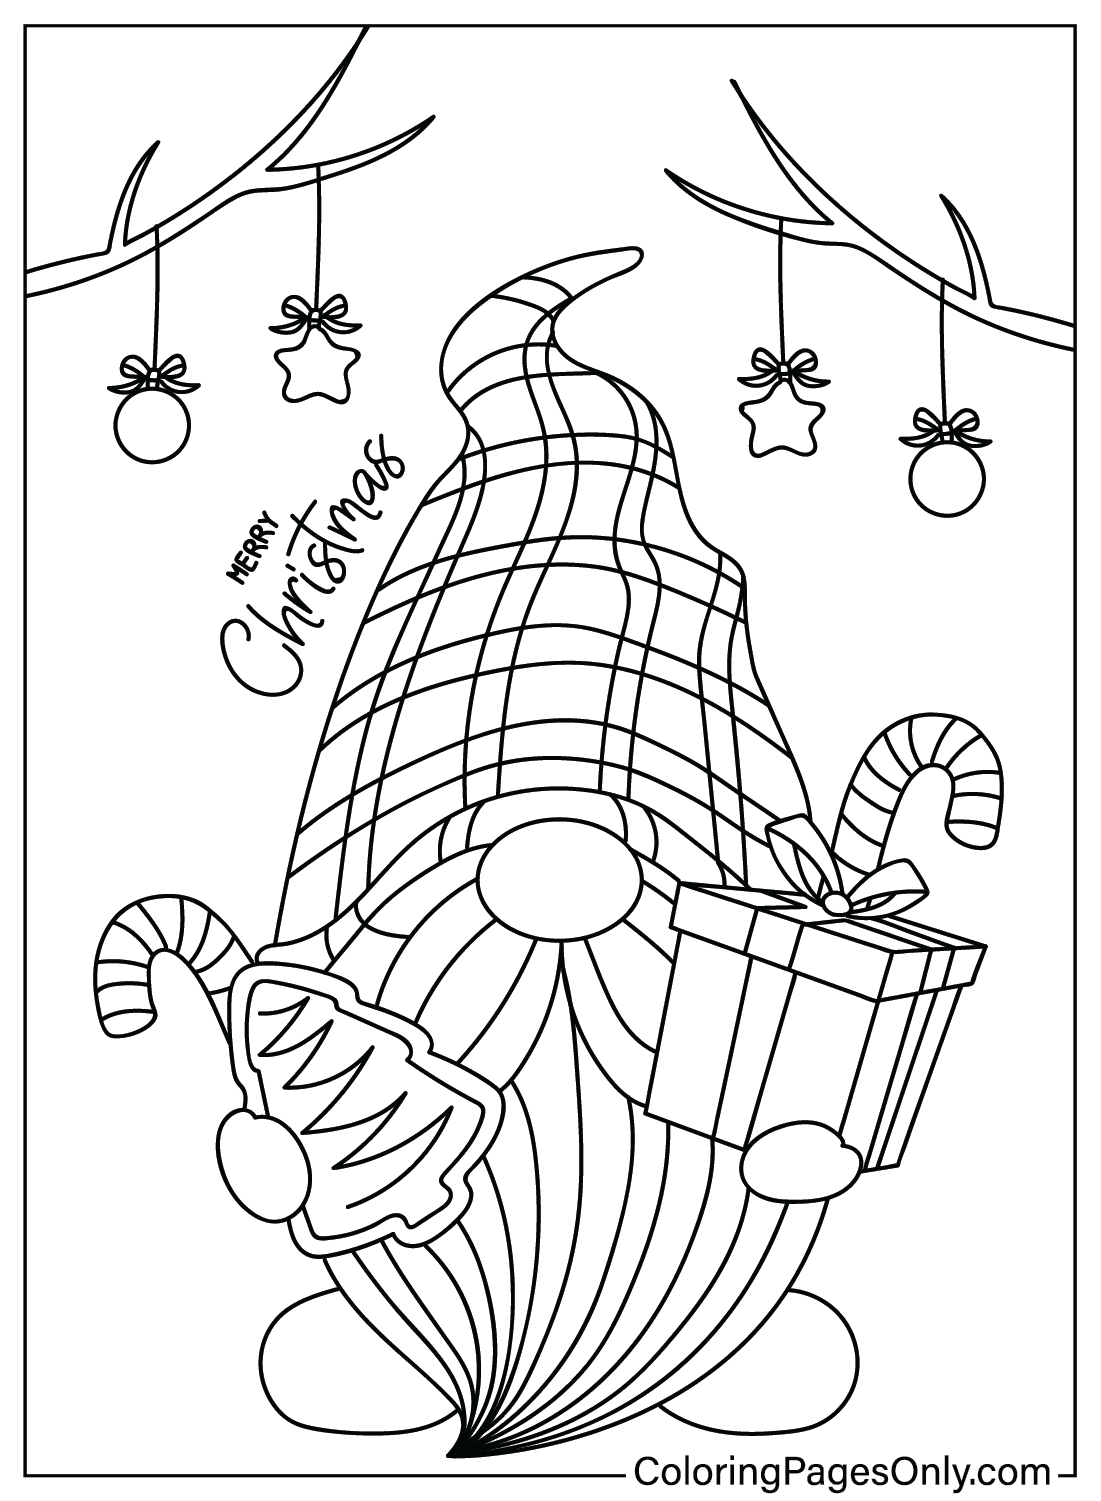 Imagem de Natal do Gnome para colorir do Gnome